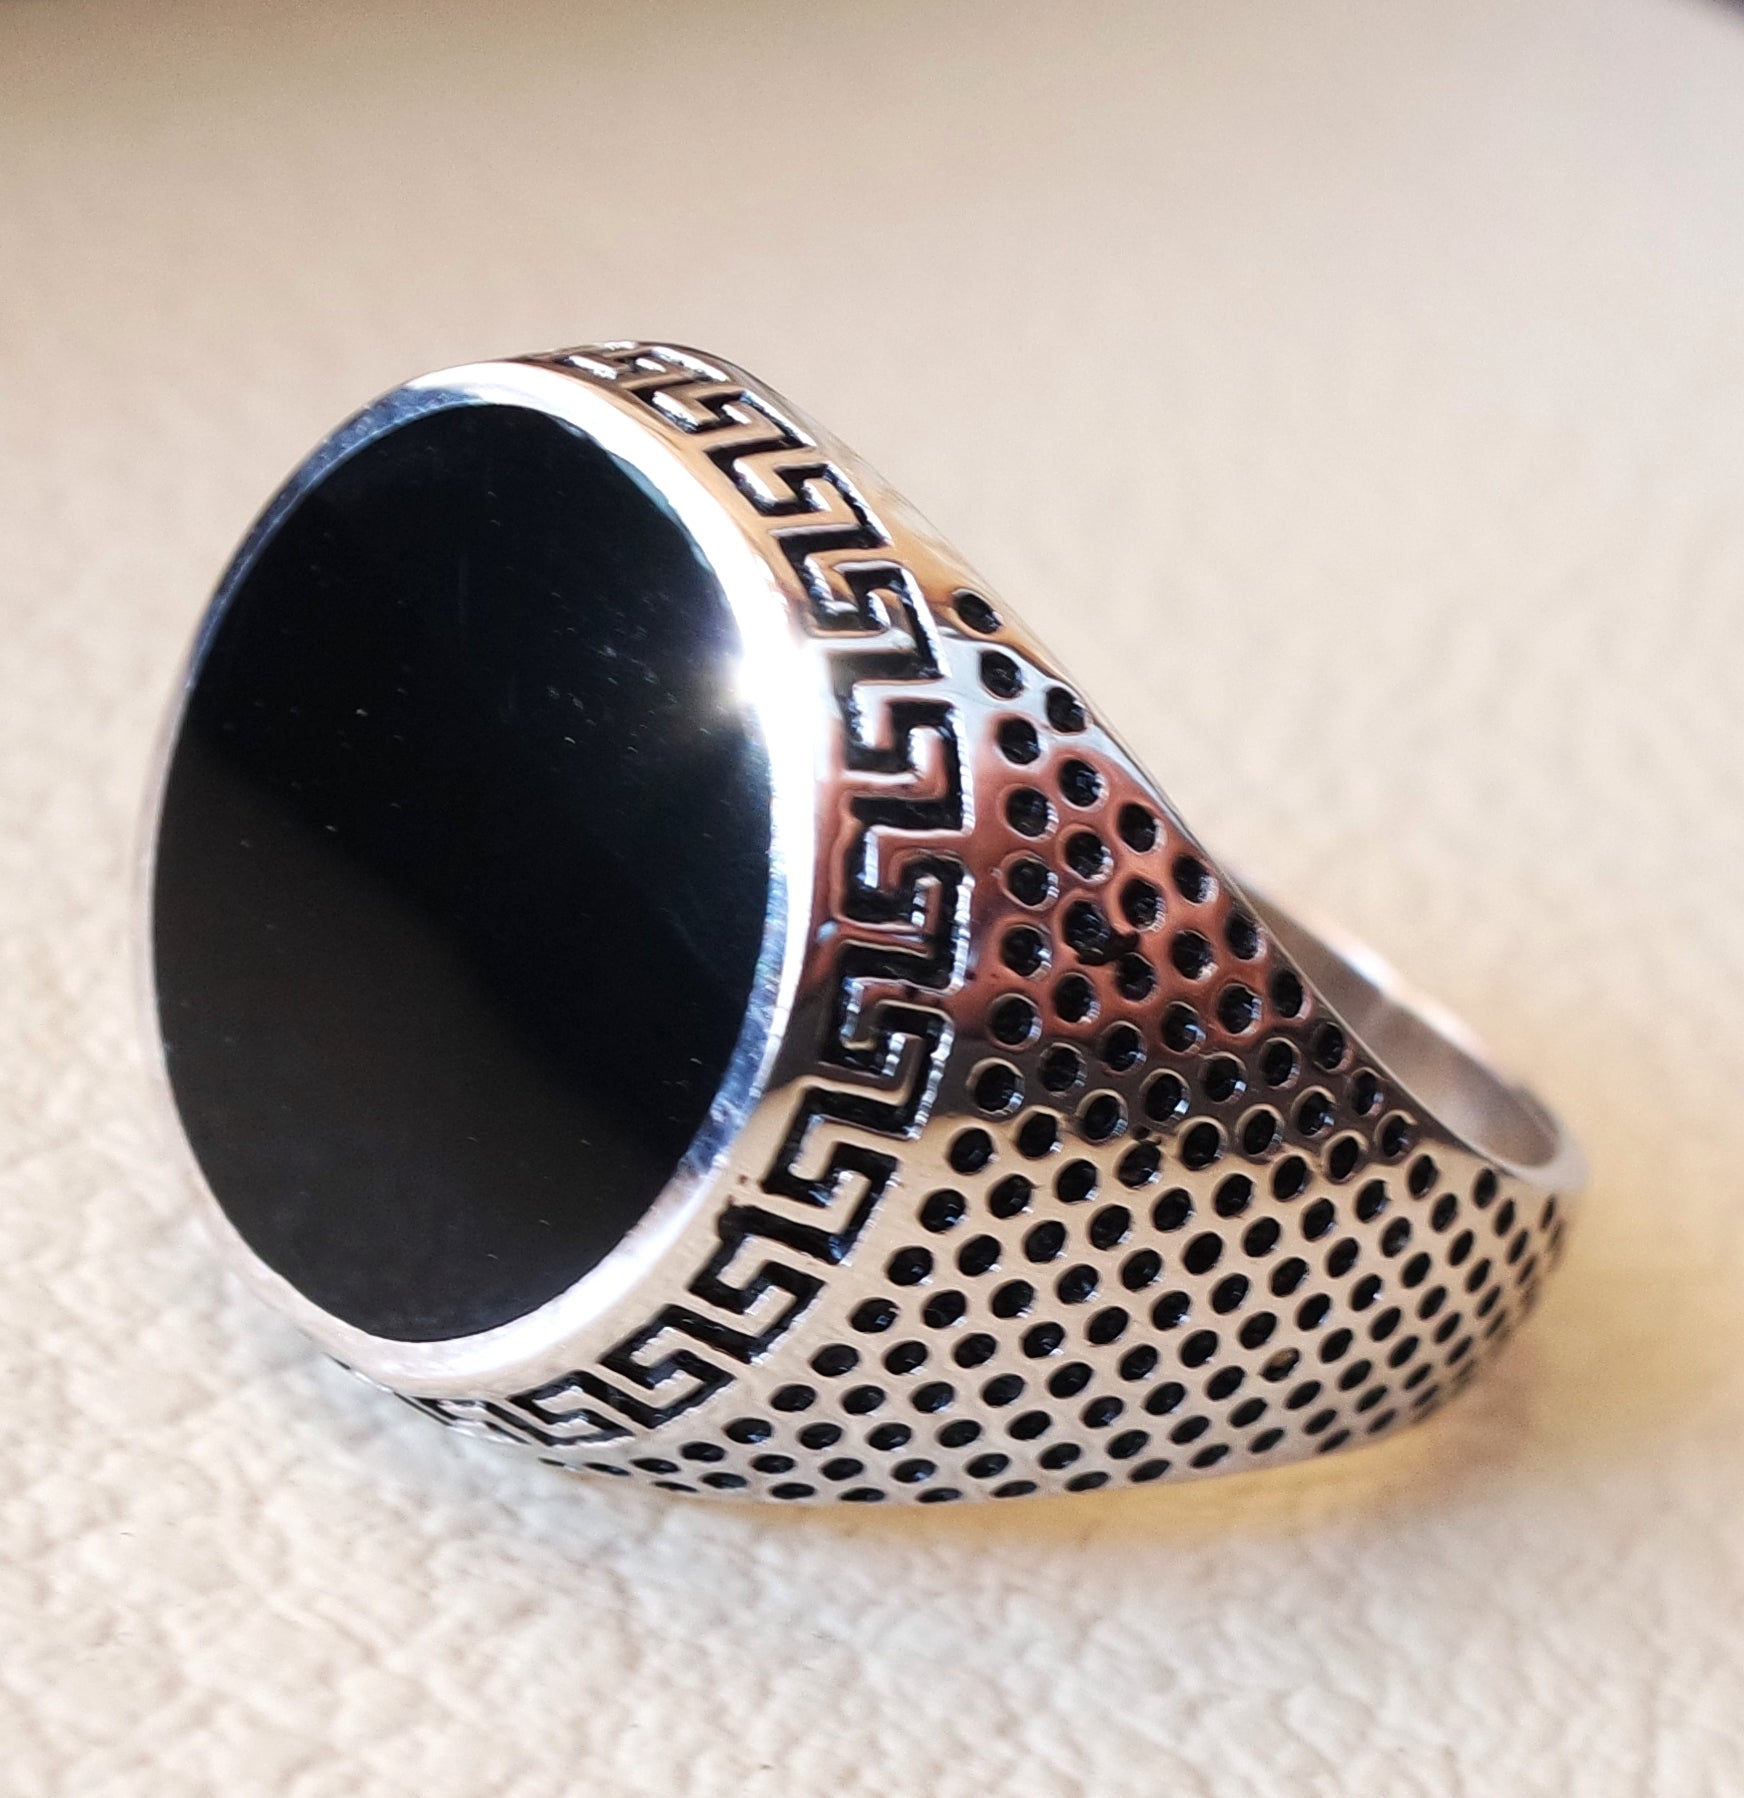 negro ónix esmalte redondo hombre anillo de plata esterlina 925 joyas todos los tamaños otomano Turco estilo vintage envío rápido